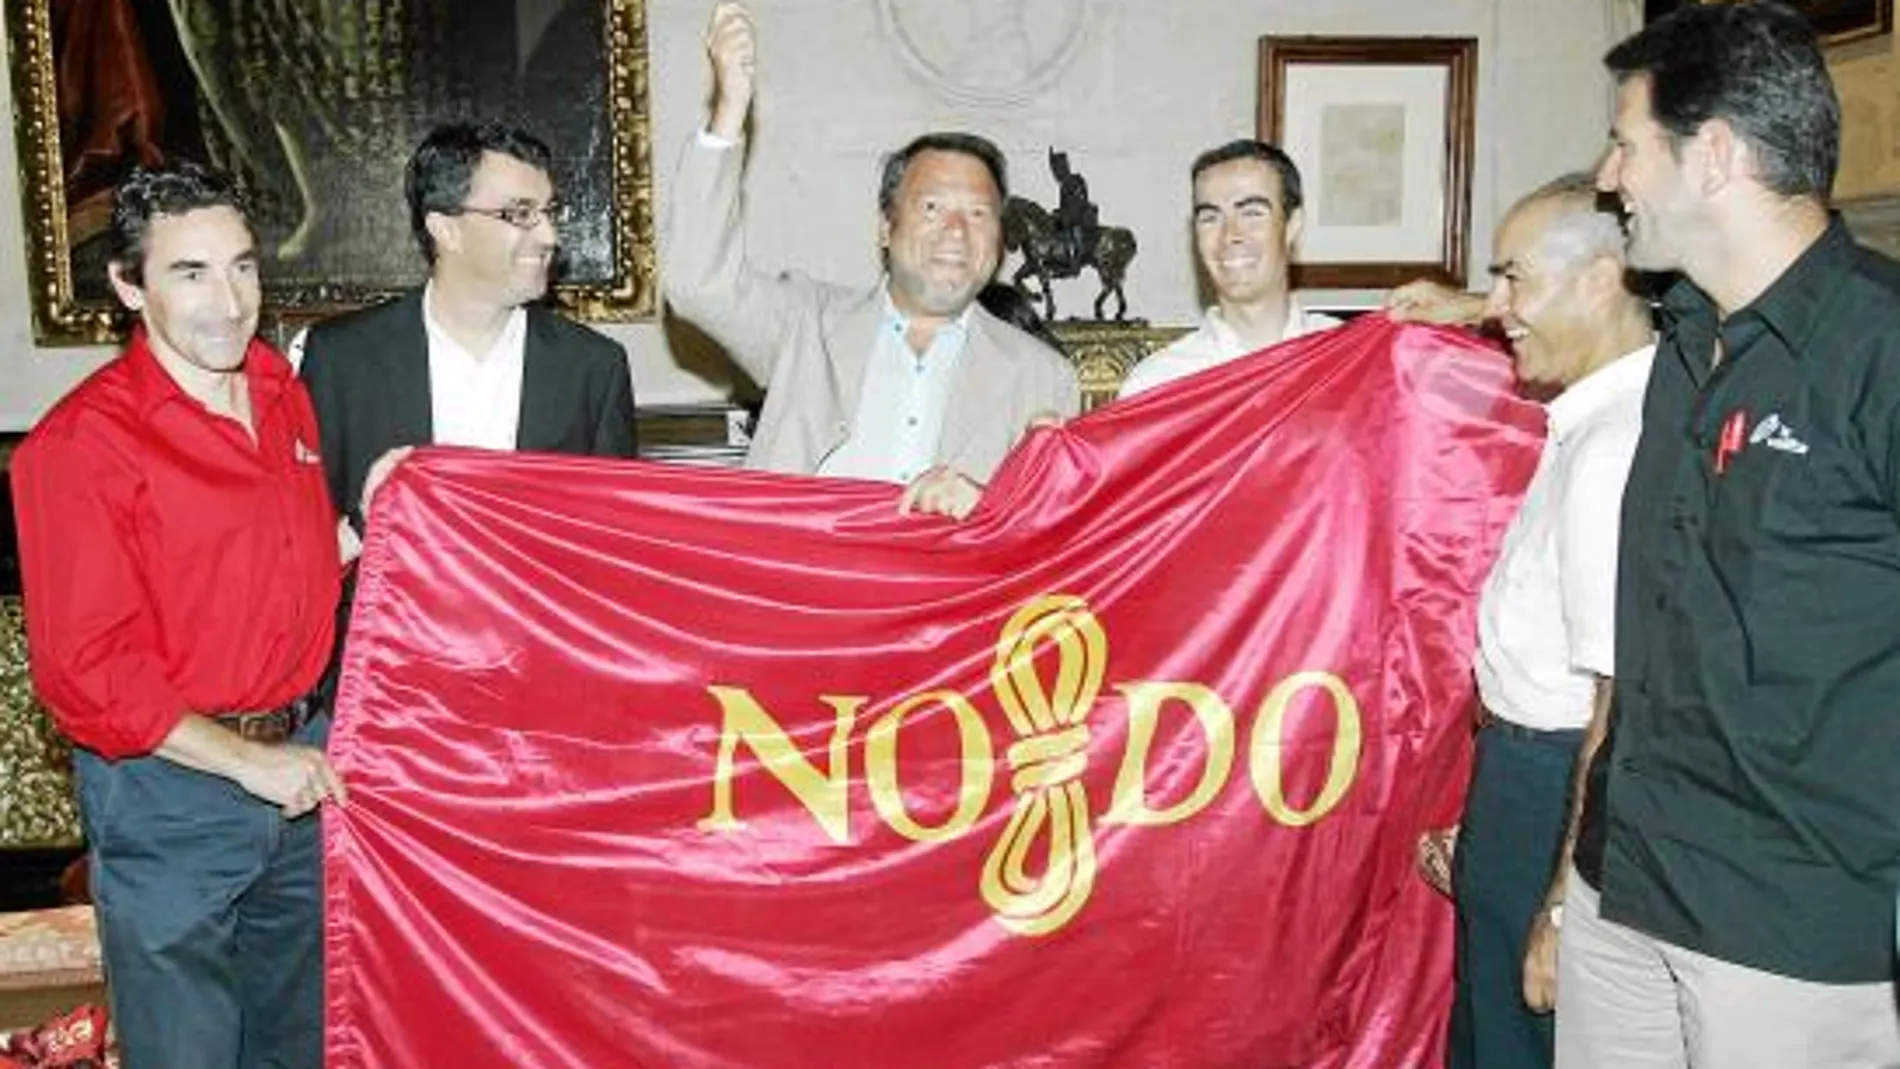 El alcalde bromea al mostrar la bandera de la ciudad que le regaló al ciclista sevillano Antonio Piedra